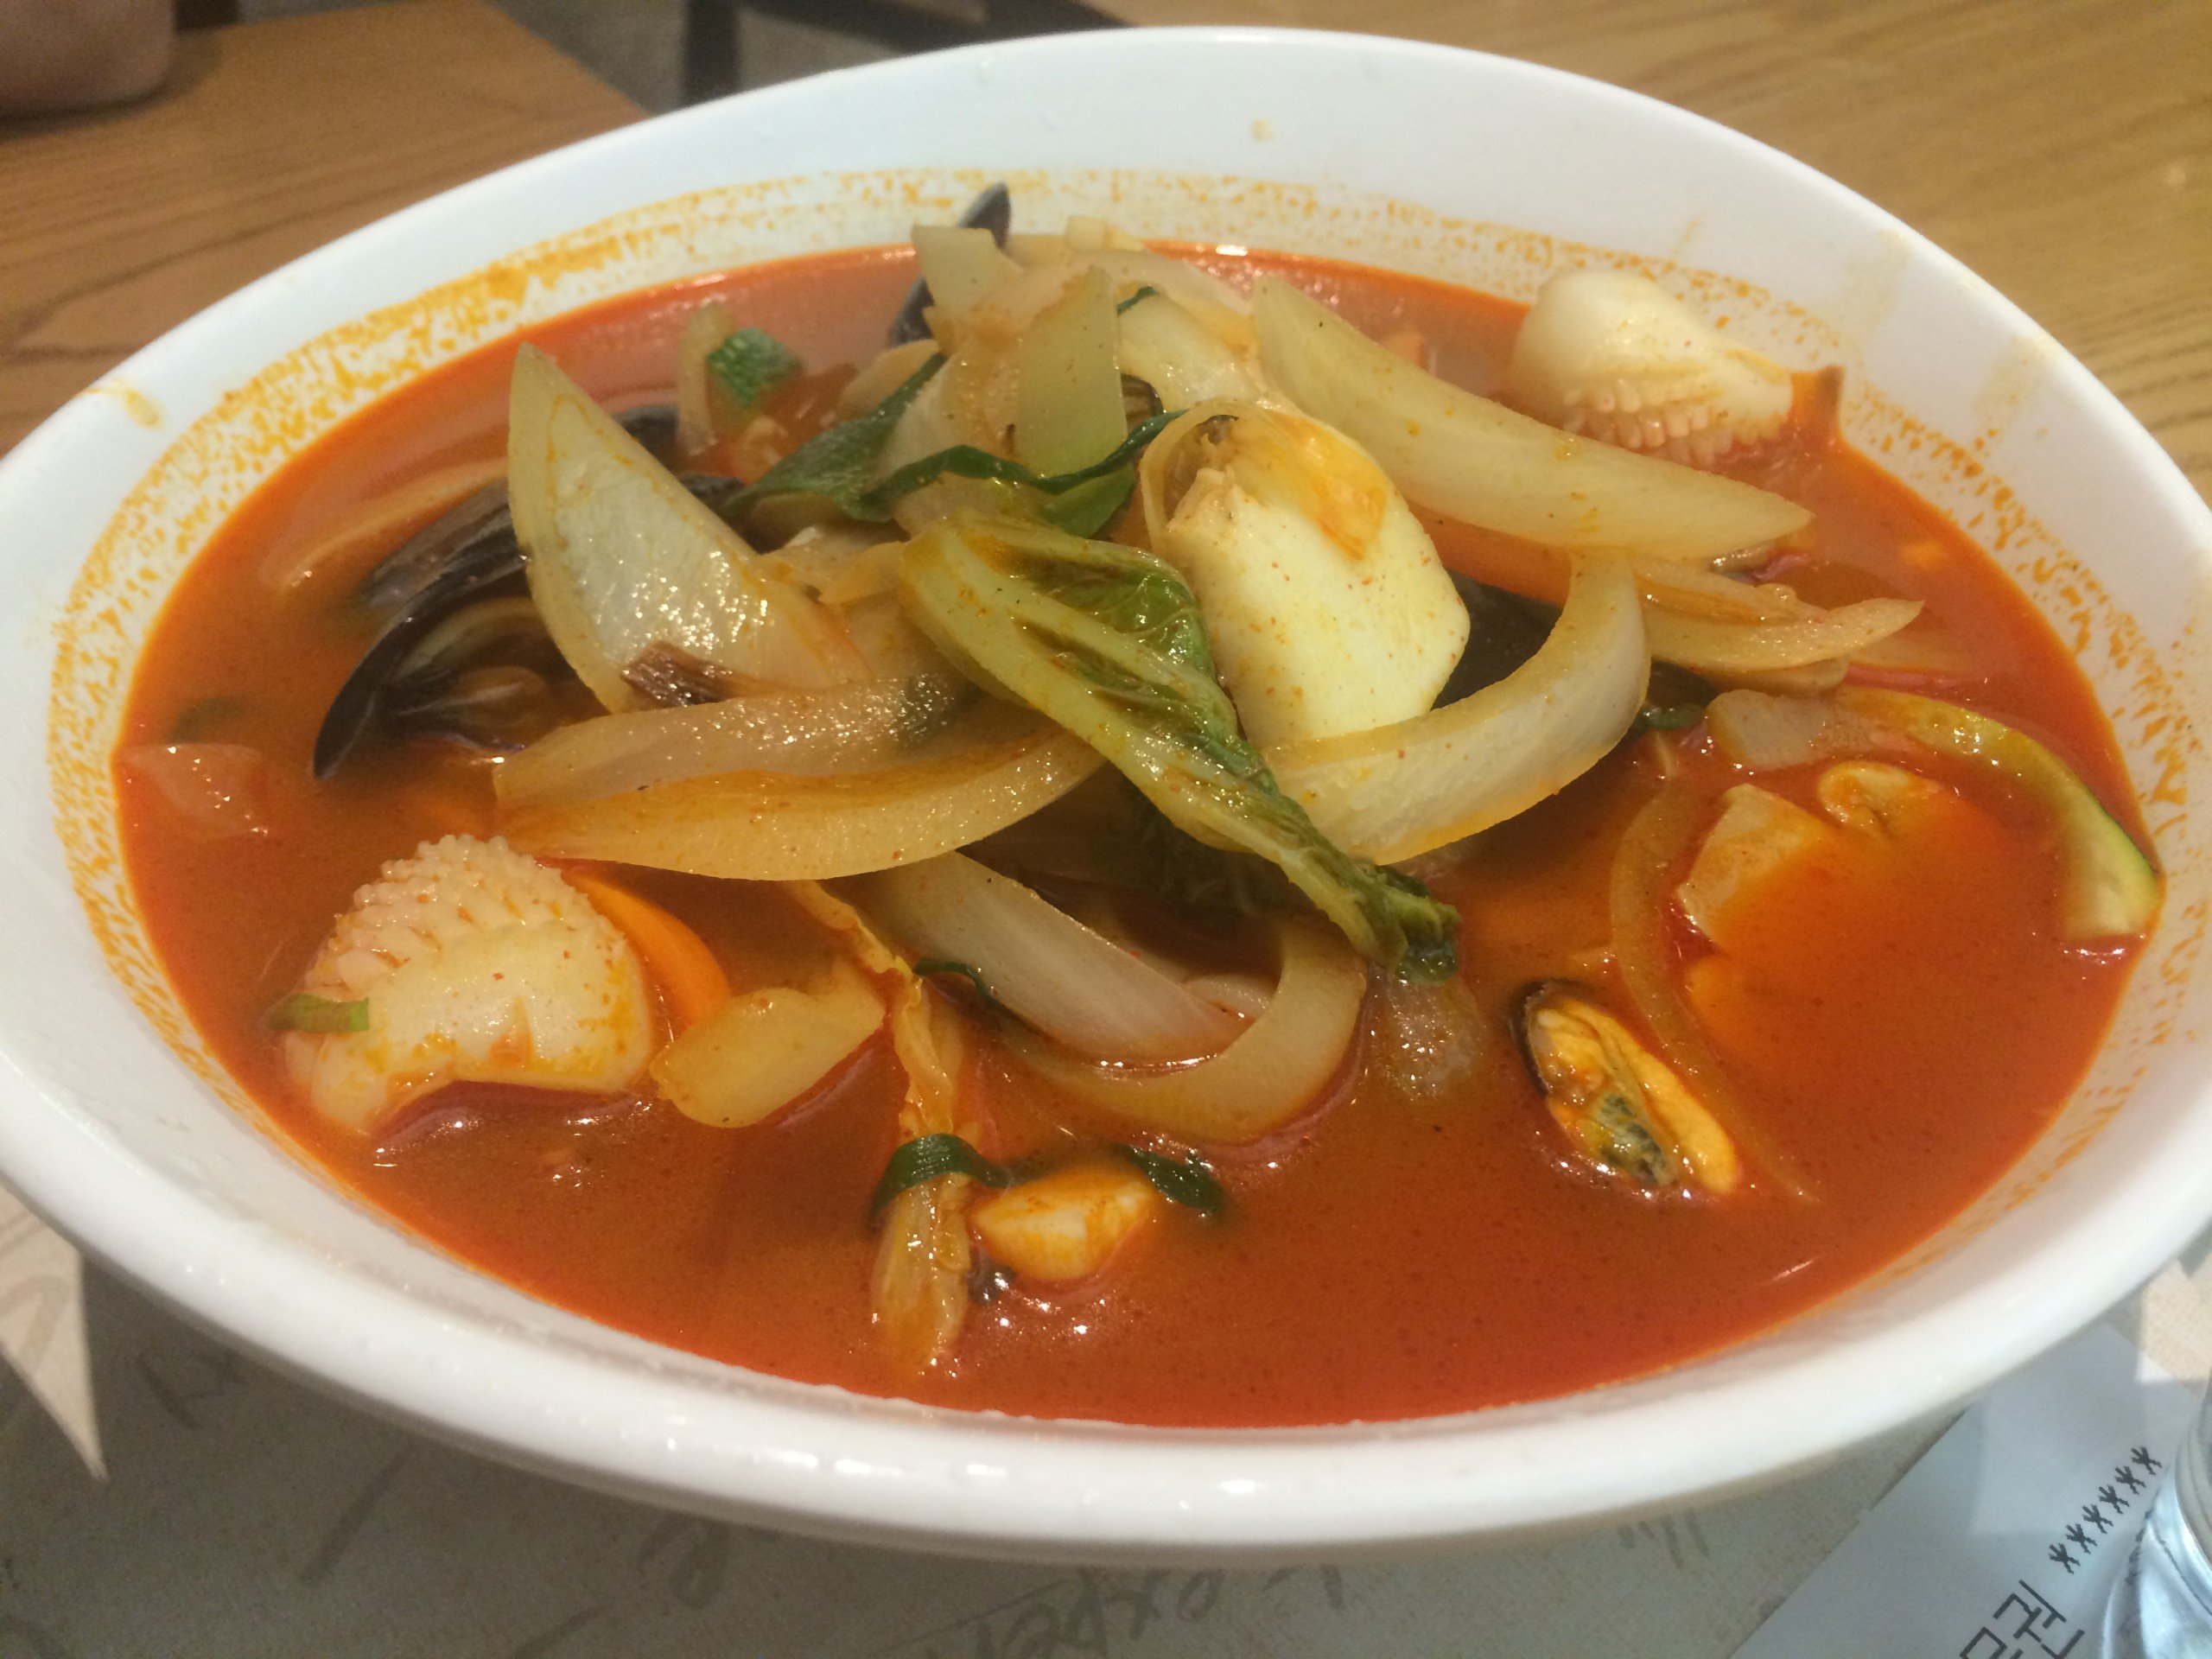 Jjampong - spicy seafood stew